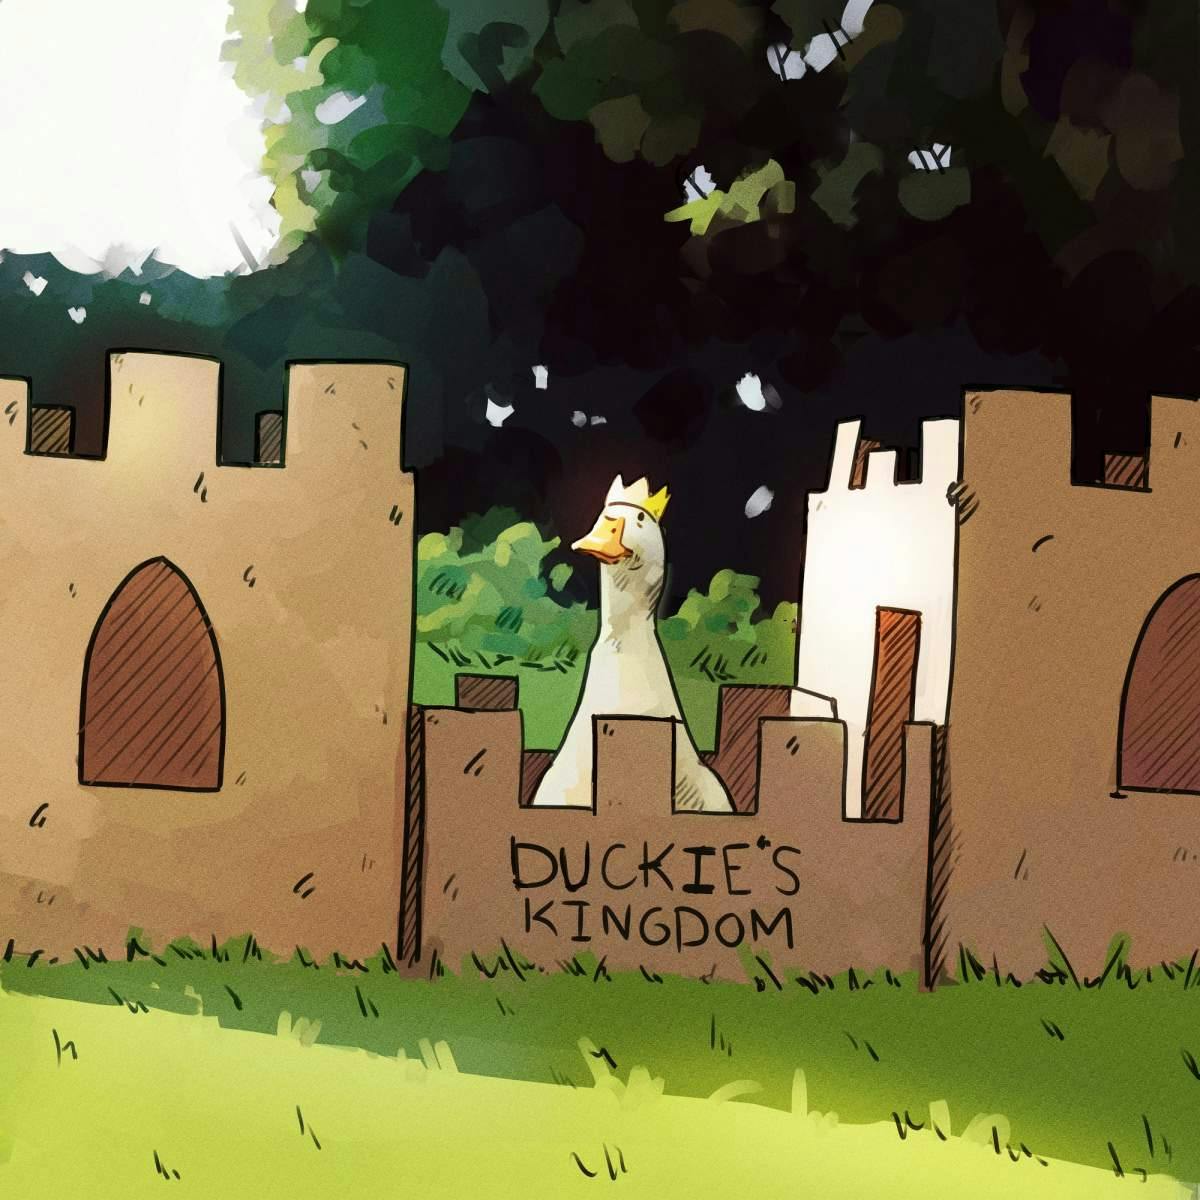 Cartoon duck wearing a crown in front of a cardboard castle.